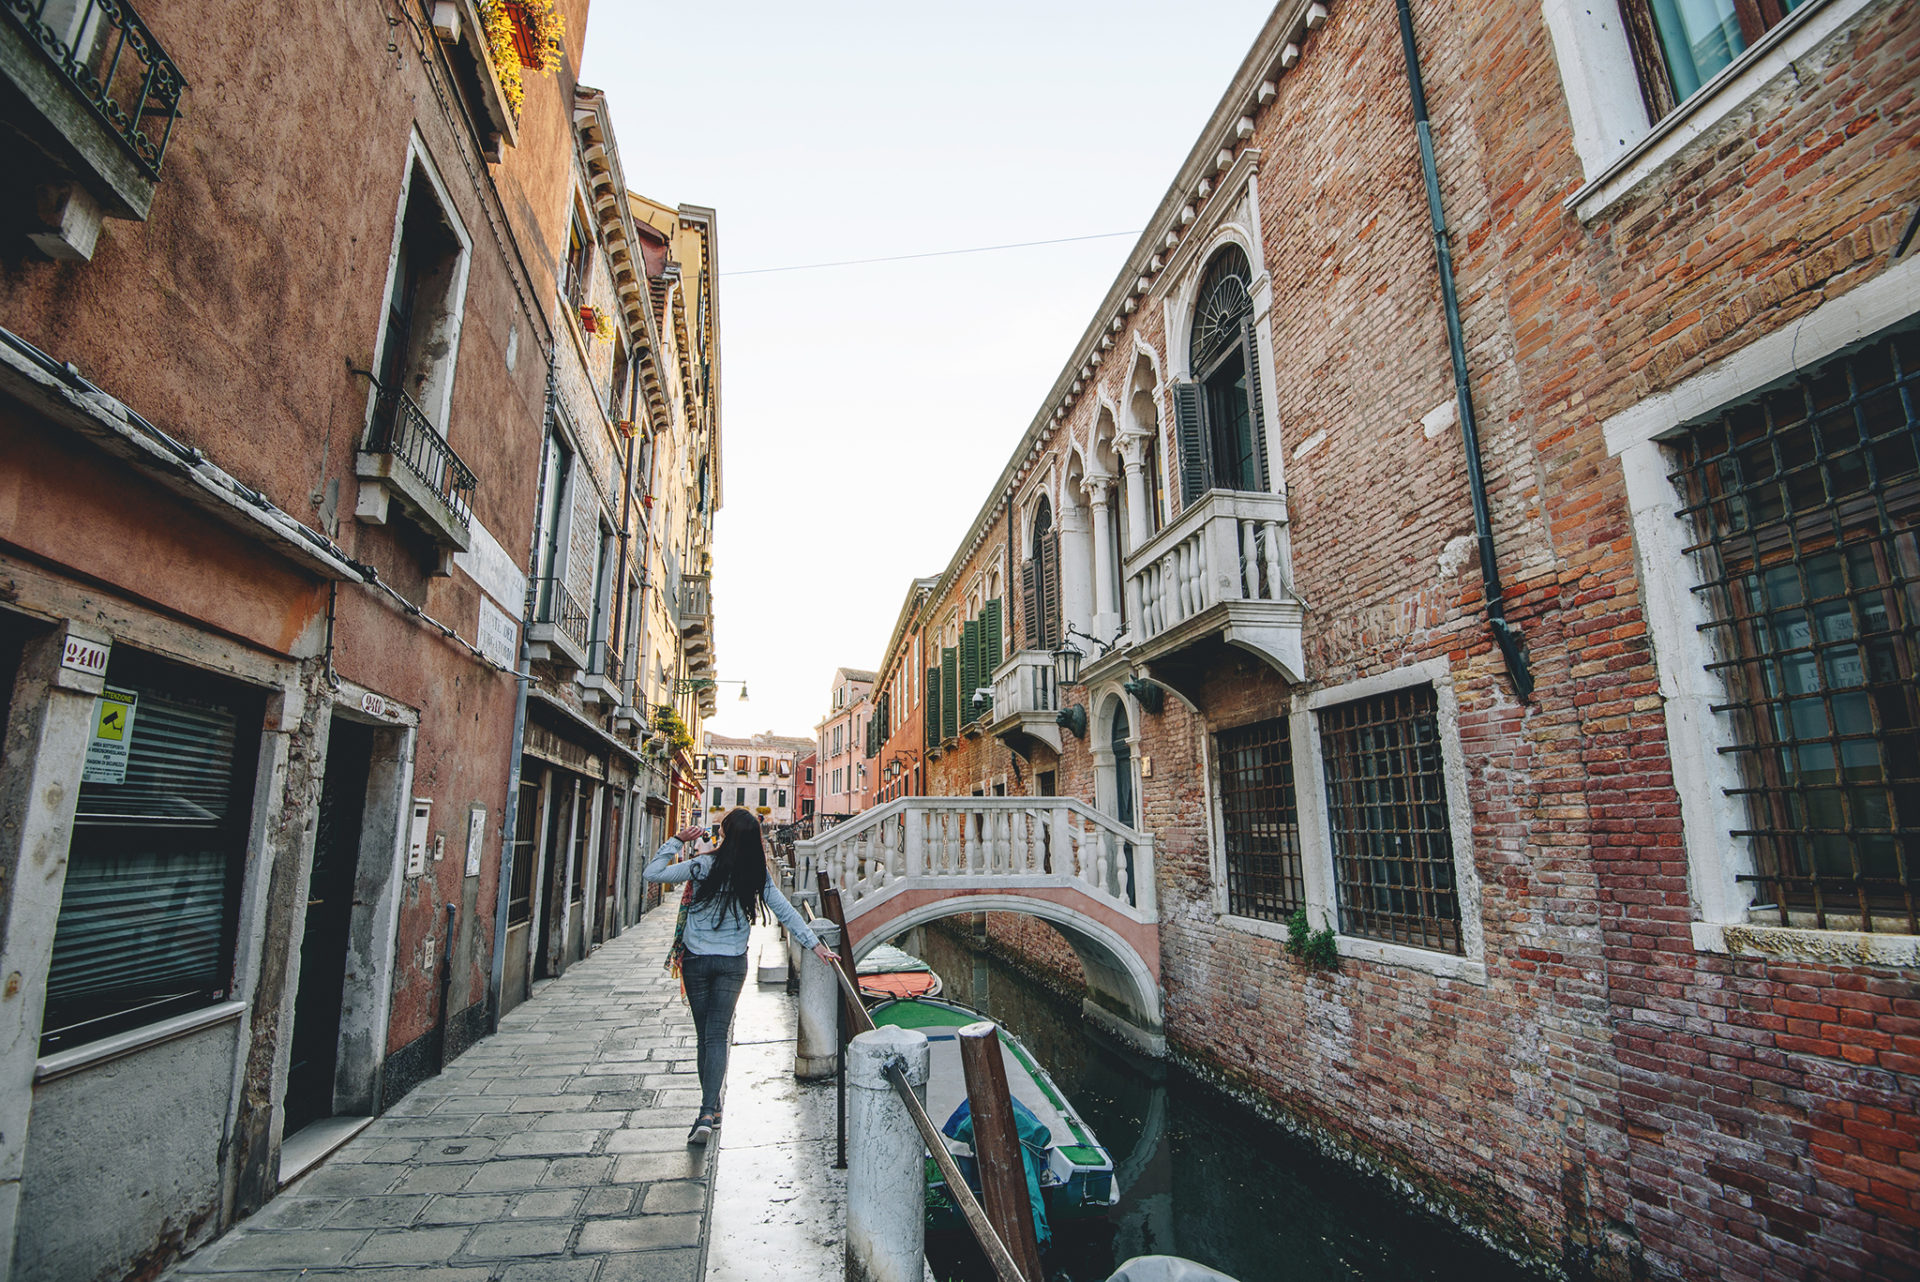 Promenade dans Venise